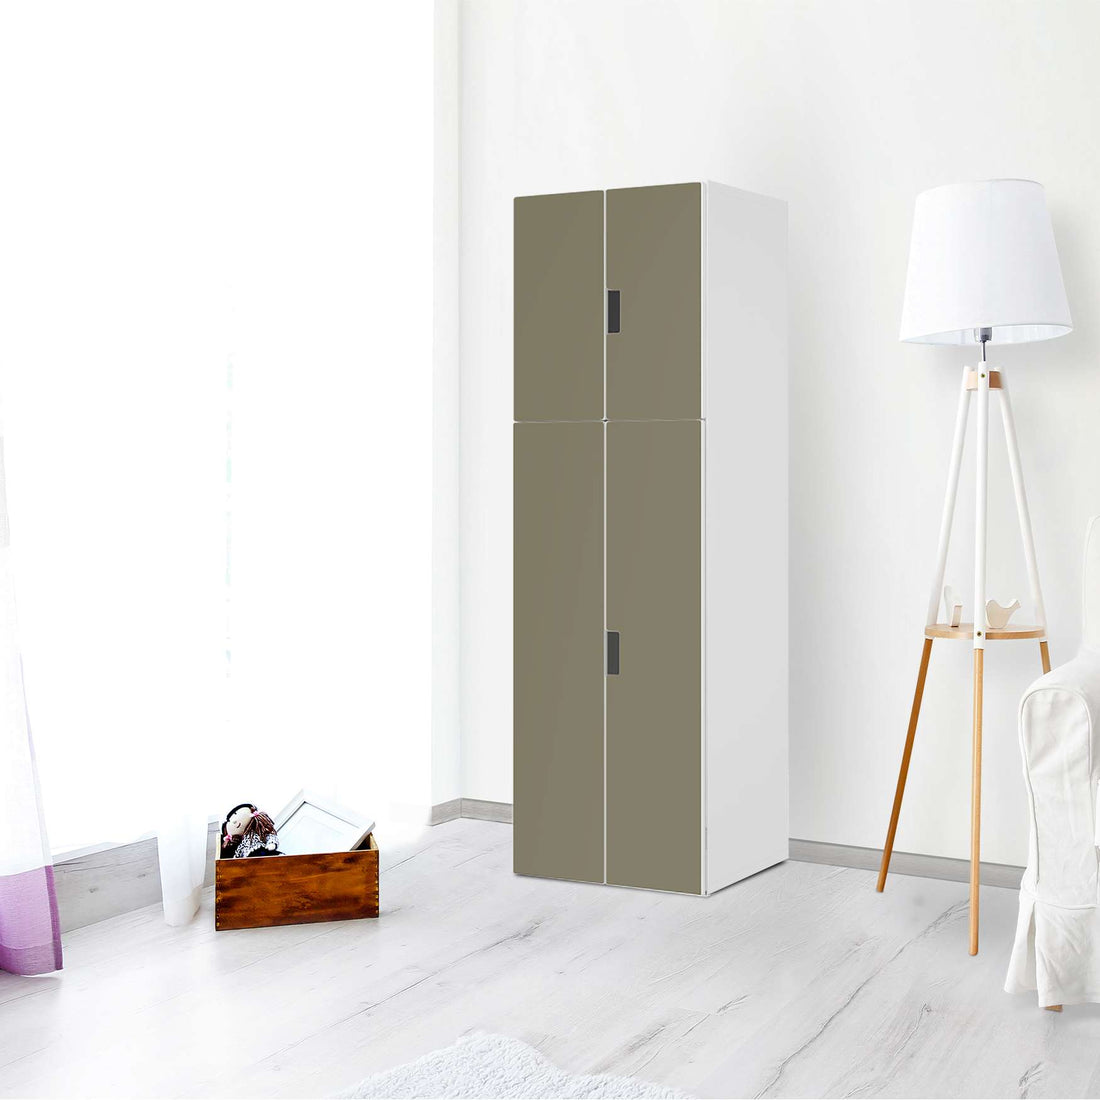 Selbstklebende Folie Braungrau Light - IKEA Stuva kombiniert - 2 große Türen und 2 kleine Türen (Kombination 2) - Wohnzimmer